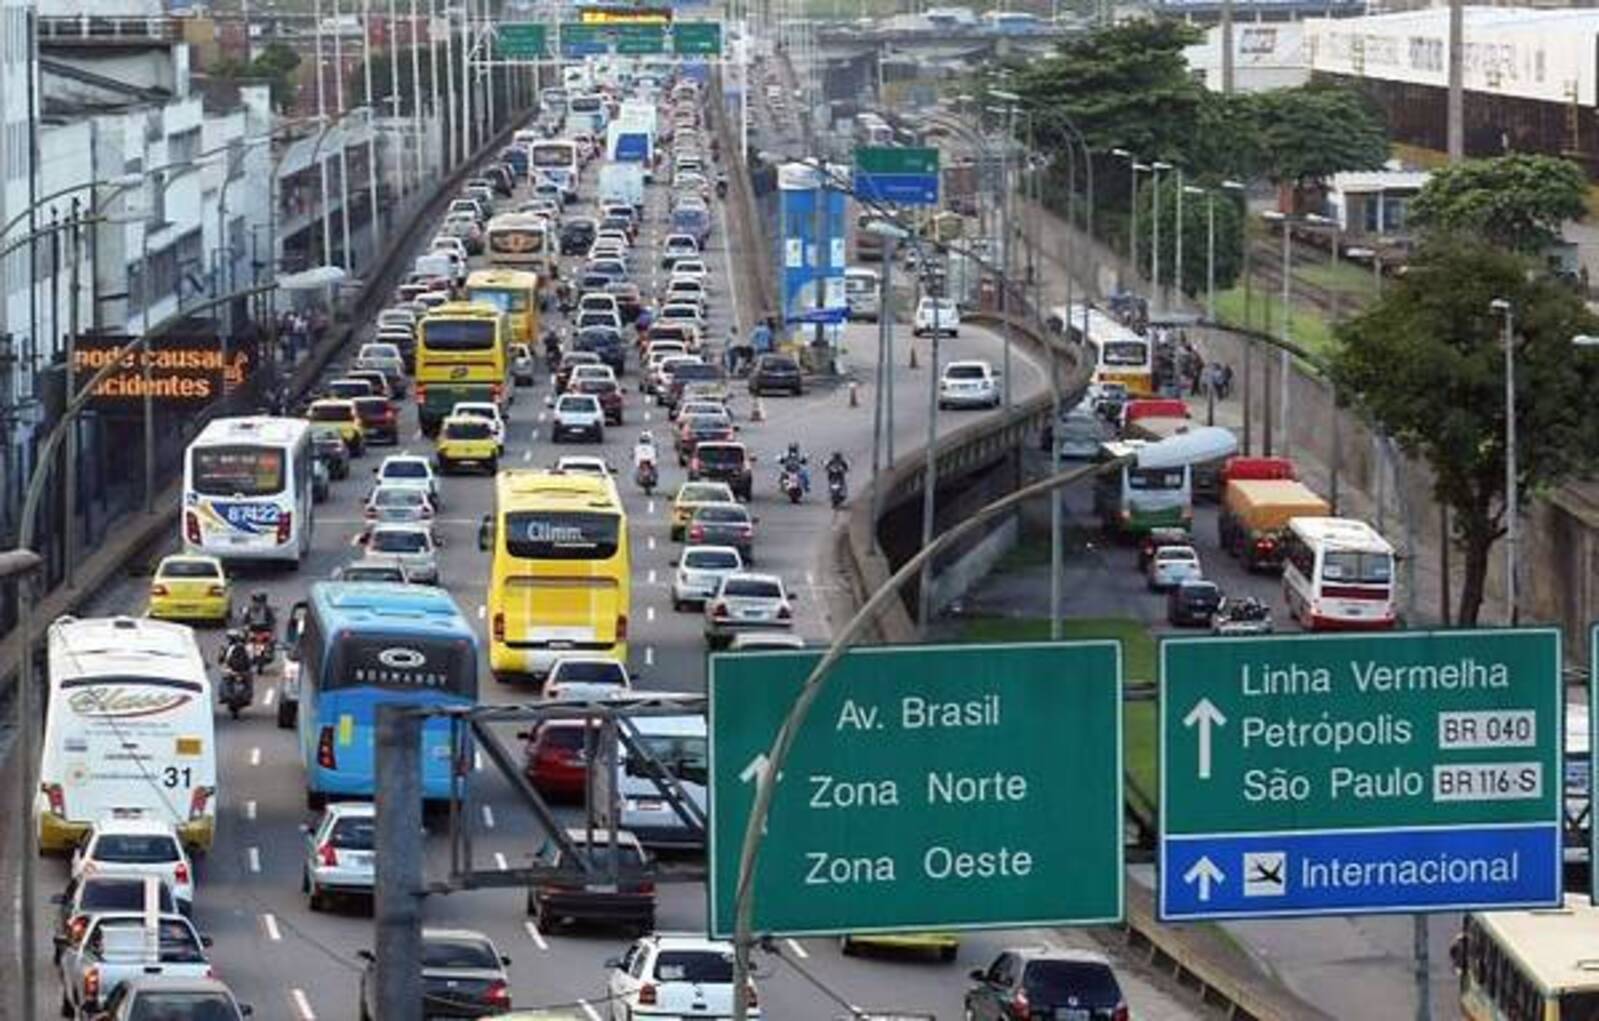 São Paulo (33º) e Rio de Janeiro (107º) estão em ranking de cidades com piores trânsitos do mundo